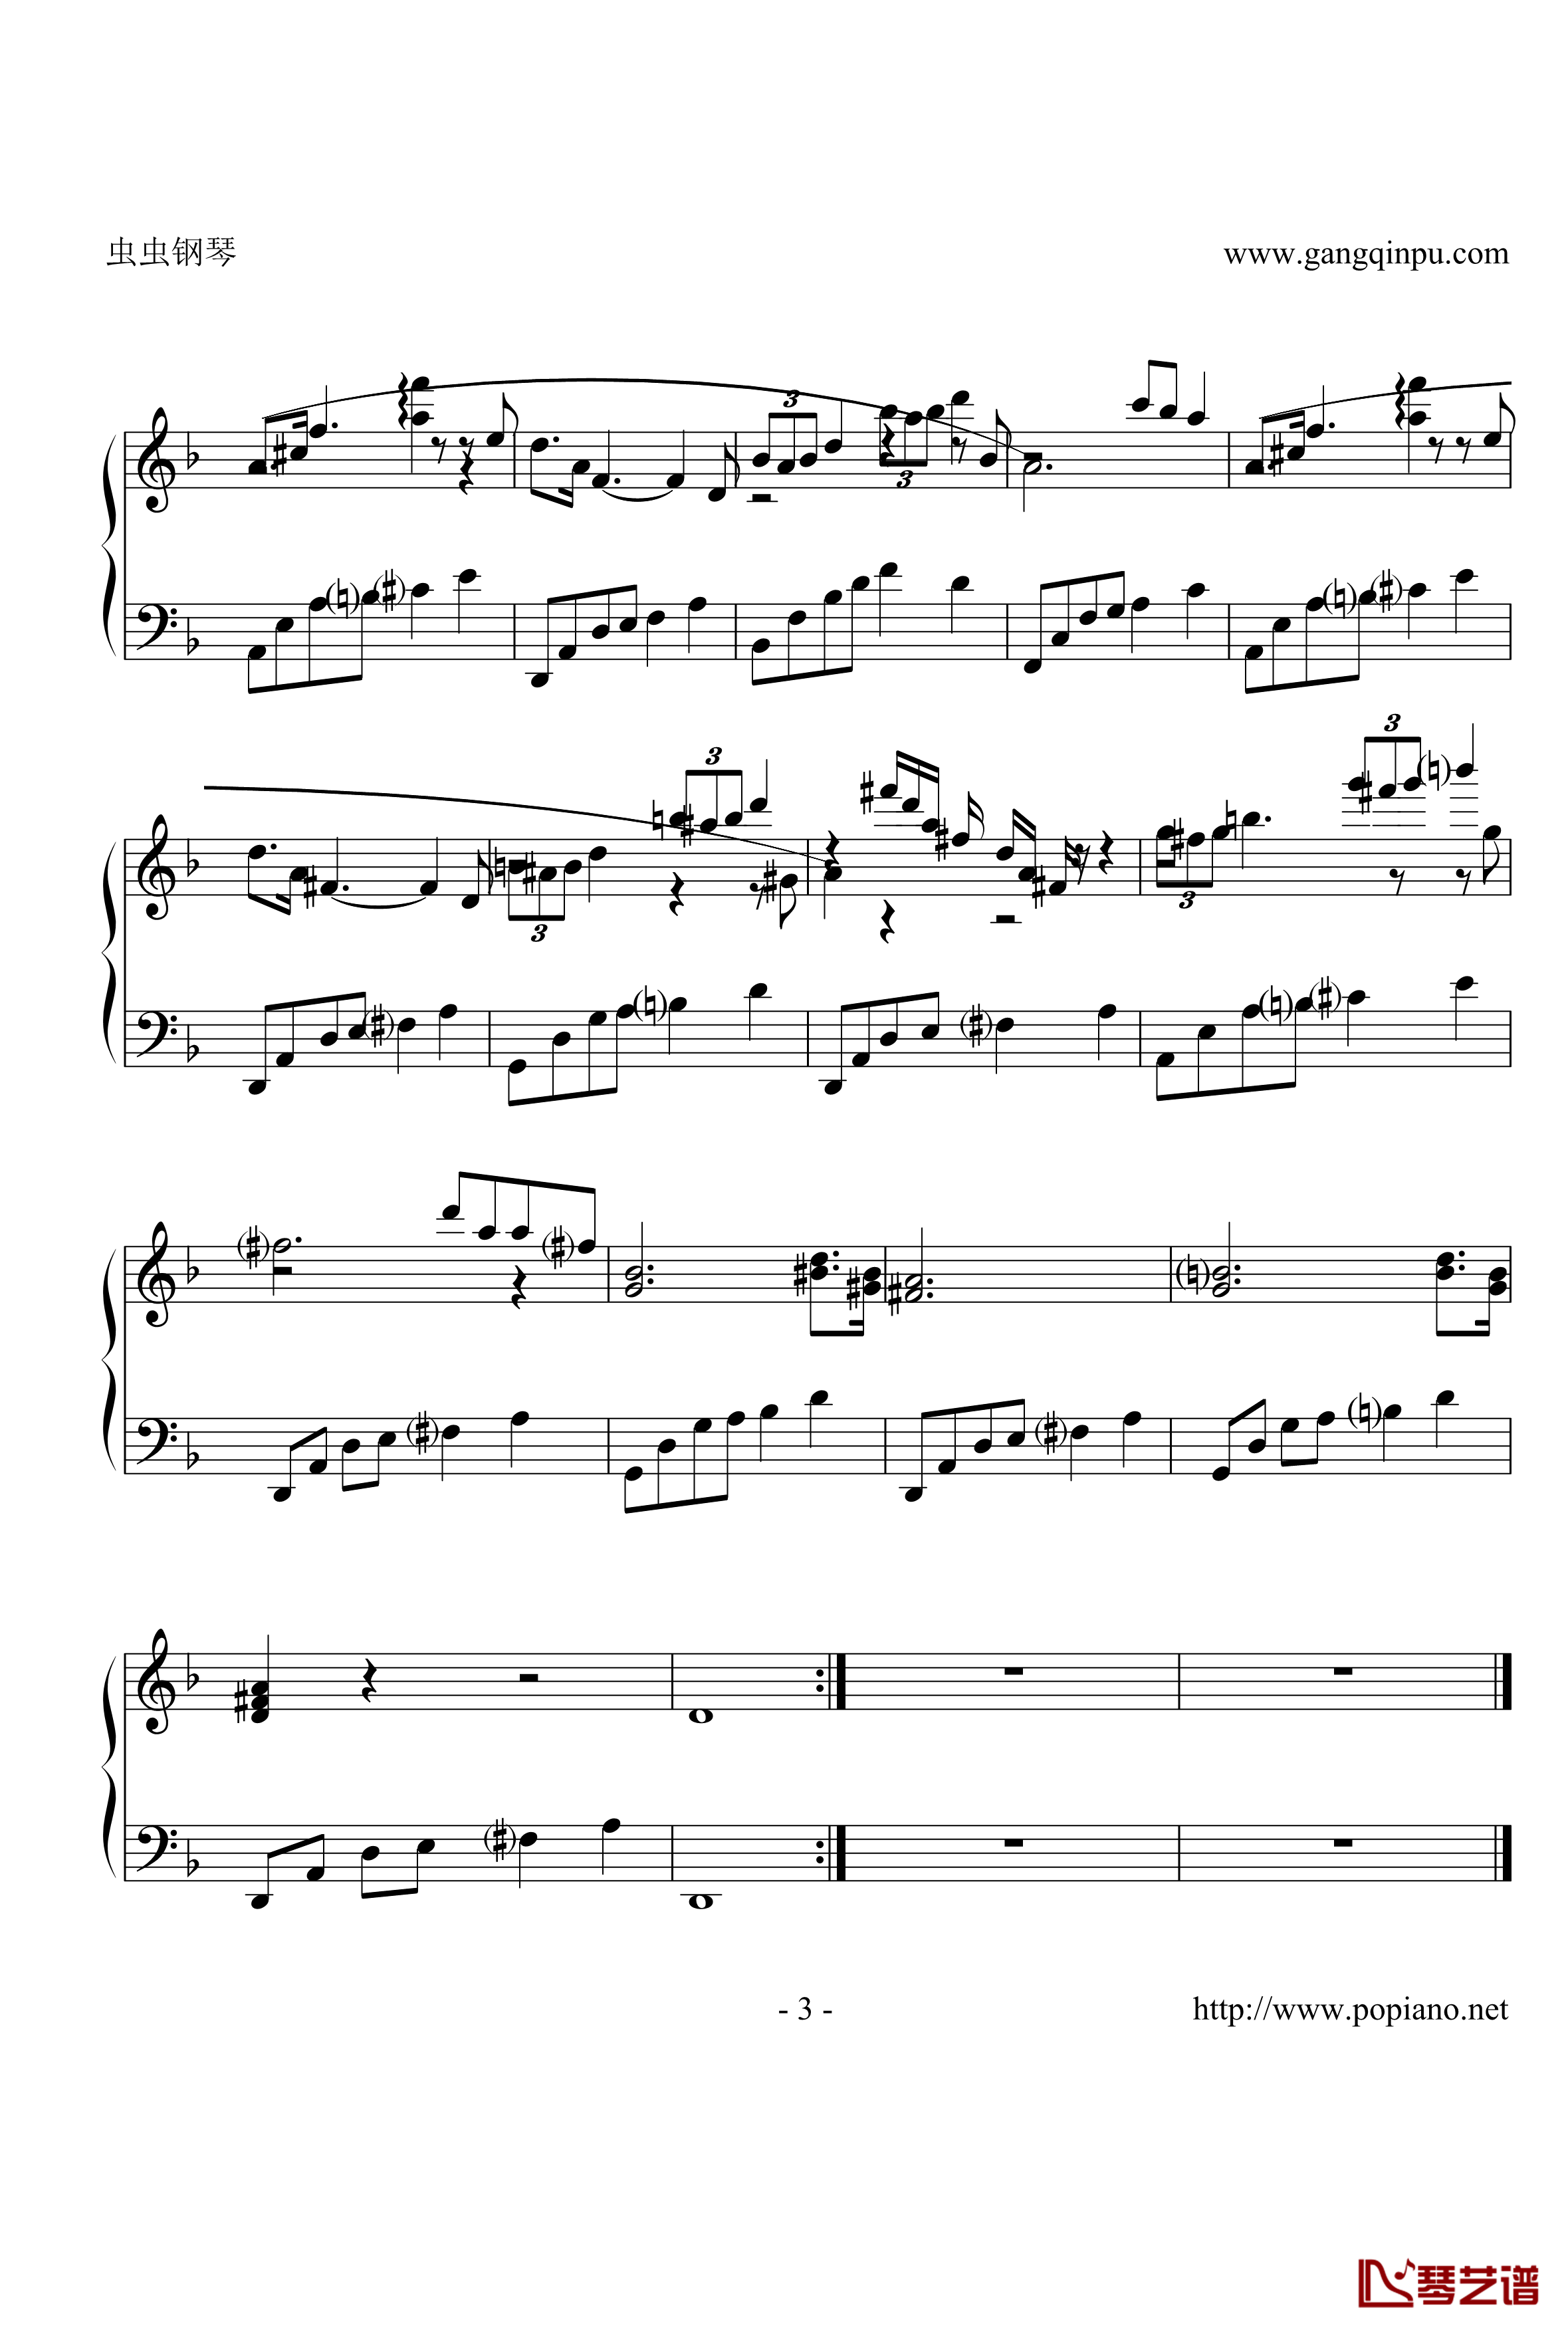 小夜曲抒情版钢琴谱-舒伯特-3